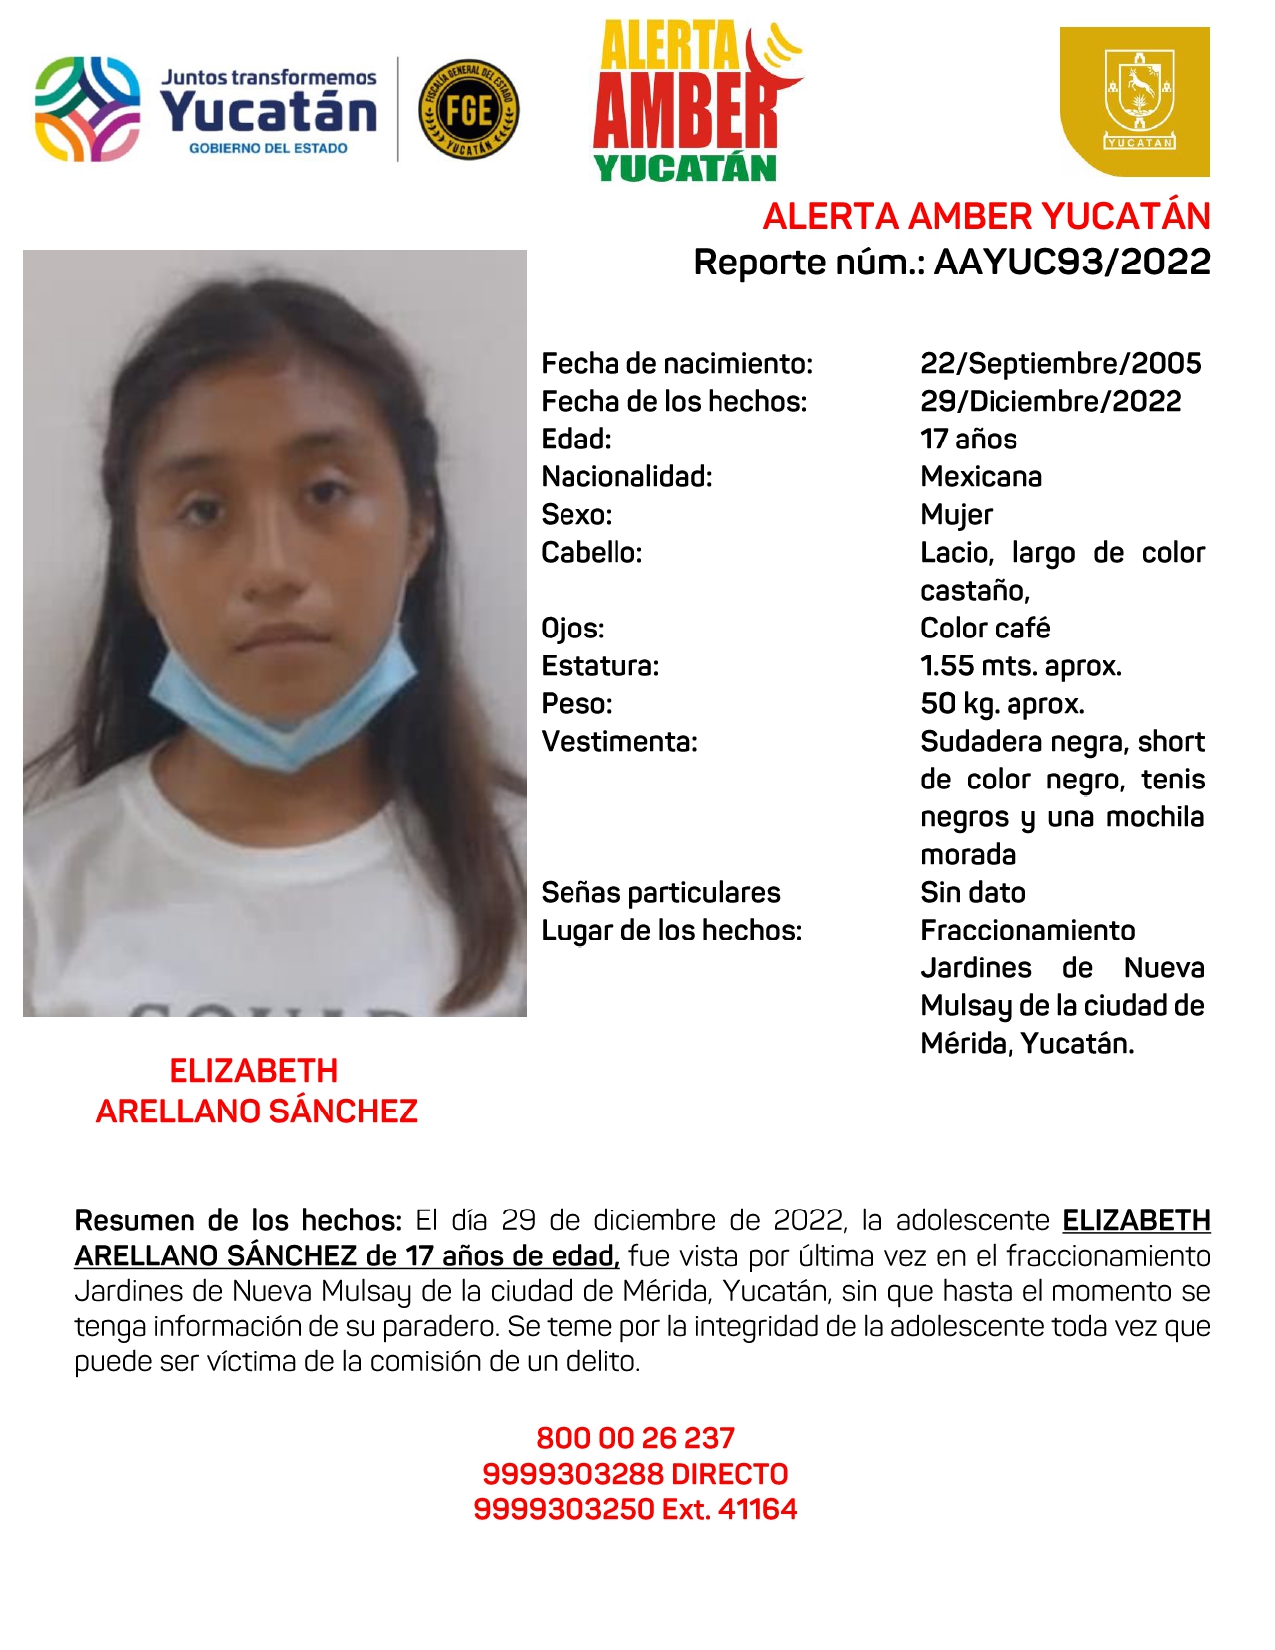 ALERTA AMBER ELIZABETH ARELLANO SÁNCHEZ DE 17 AÑOS (YUC)